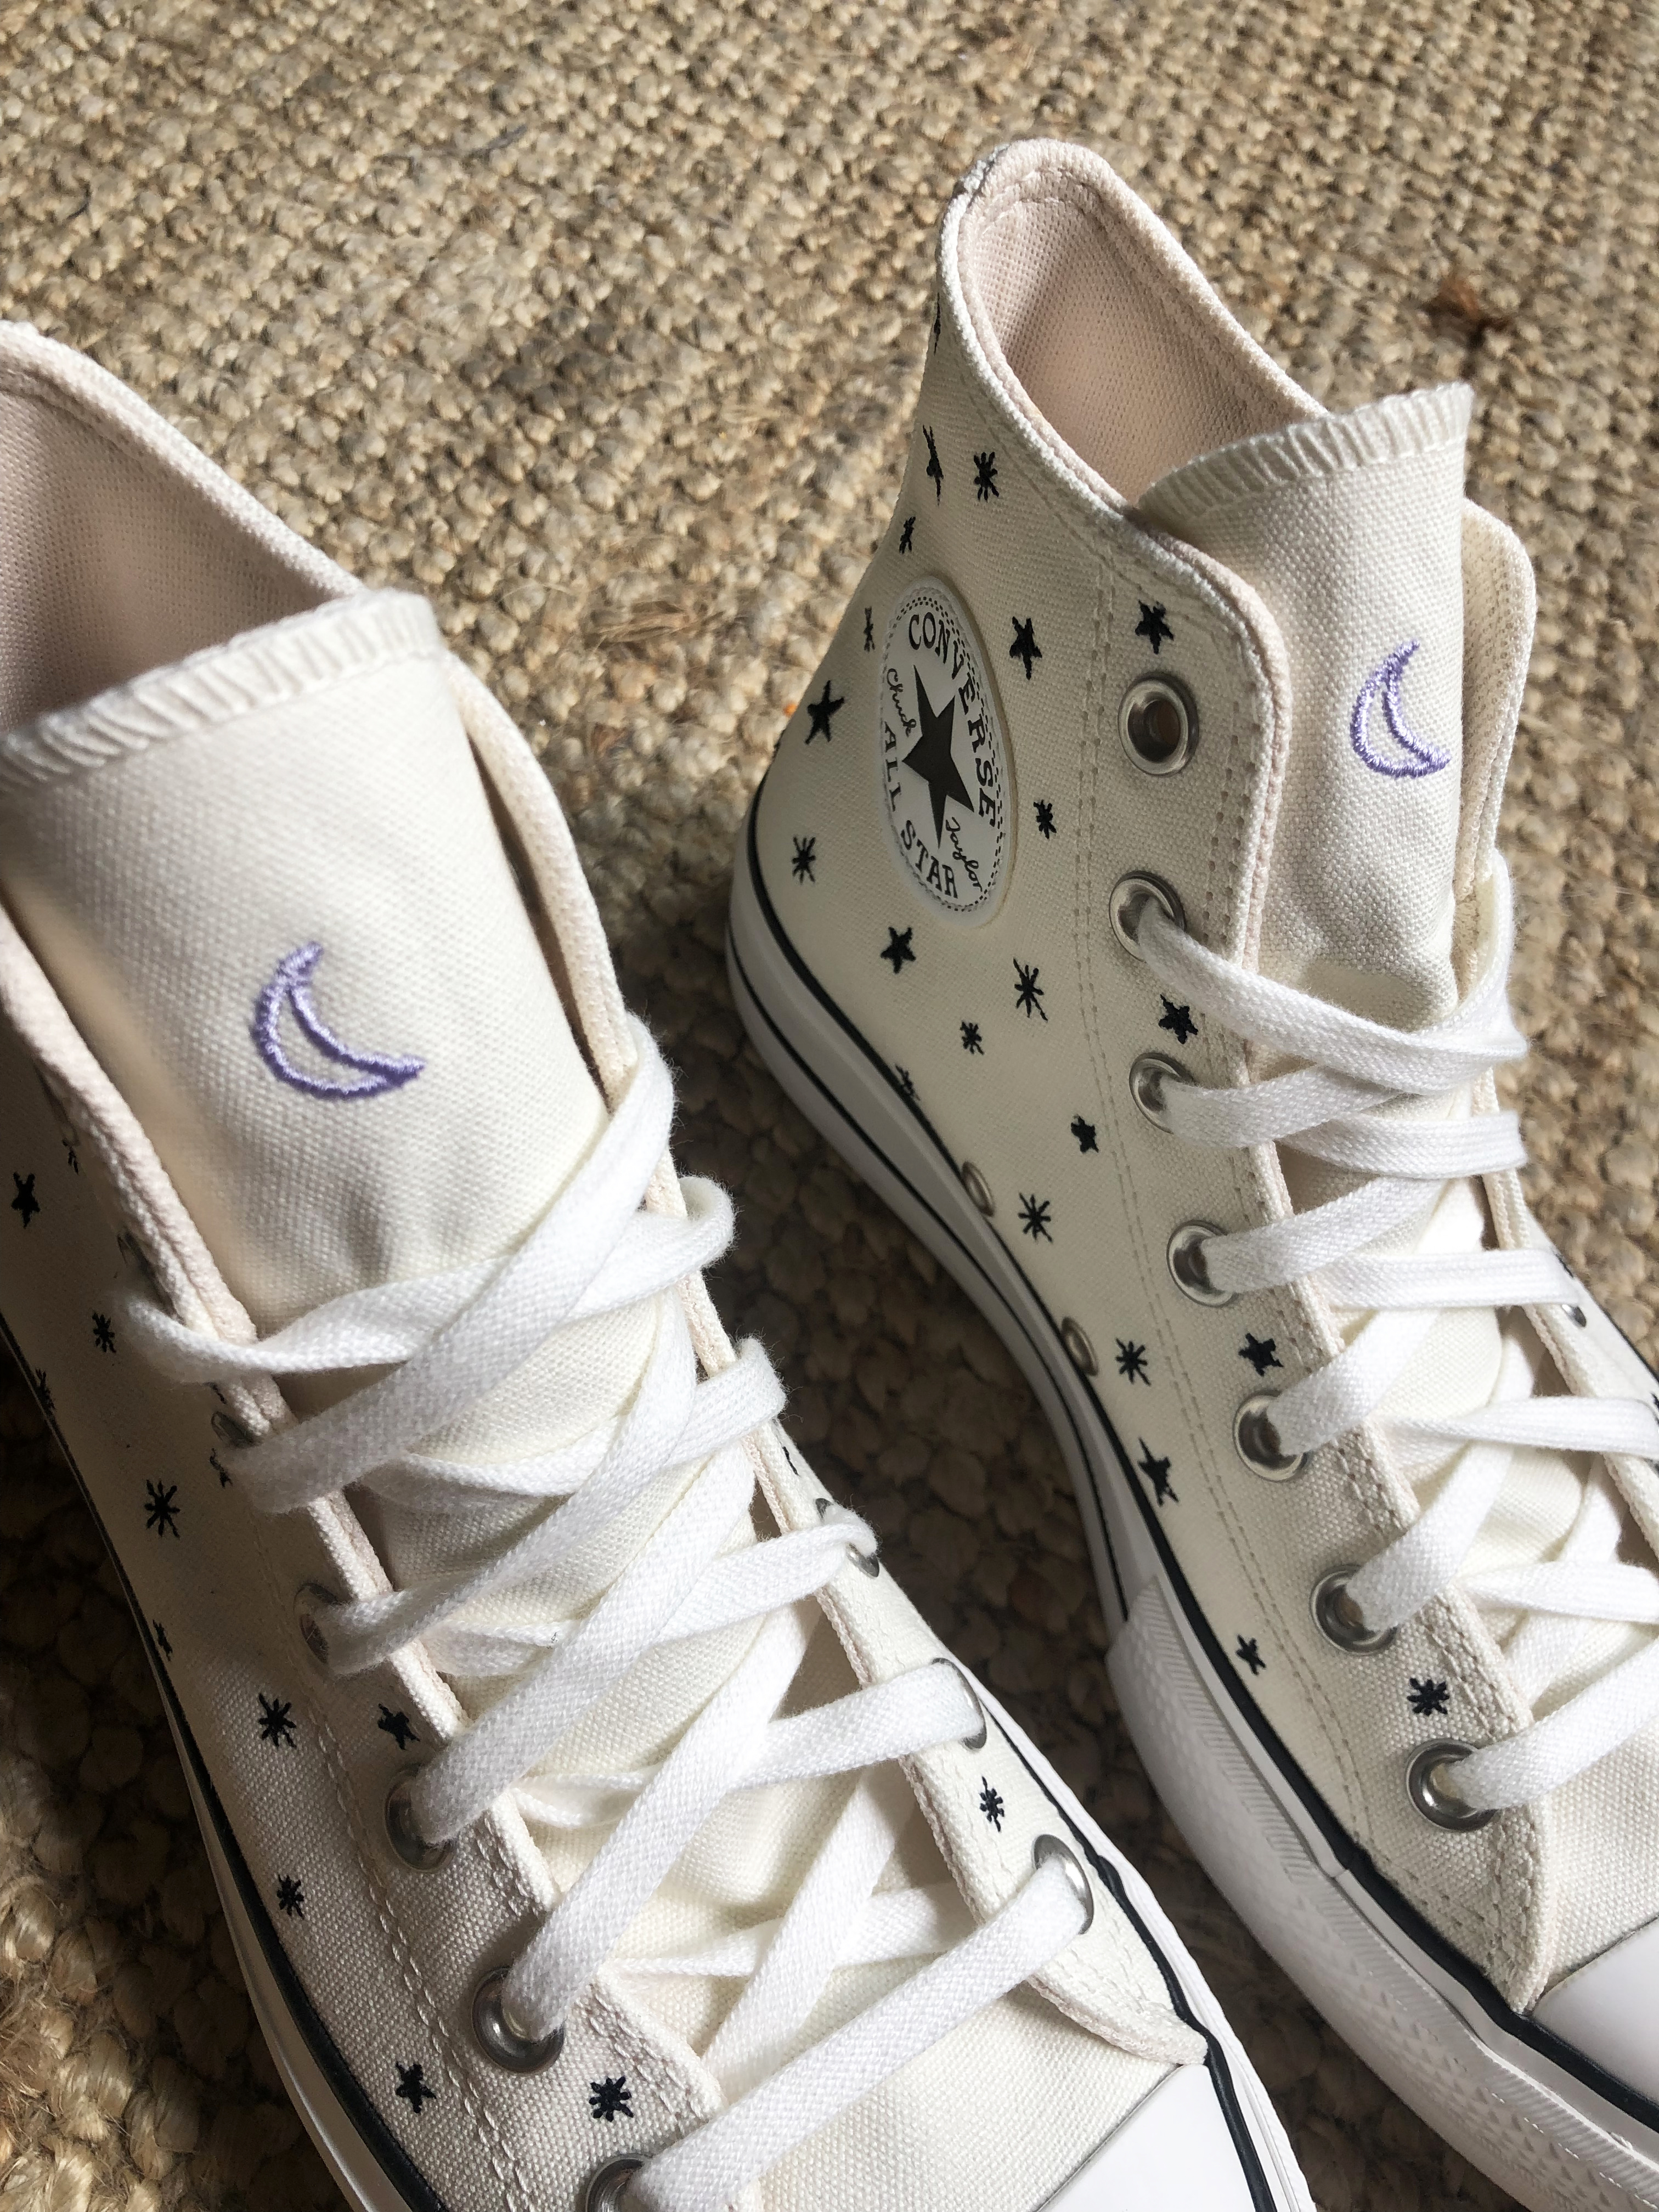 Mutuo águila frente Zapatos Mayka on Twitter: "Nueva colección Crystal Energy de Converse.✨ Su  diseño está inspirado en el cielo nocturno con estrellas y luna bordada.🌙  Dale un toque místico a tus looks con esta